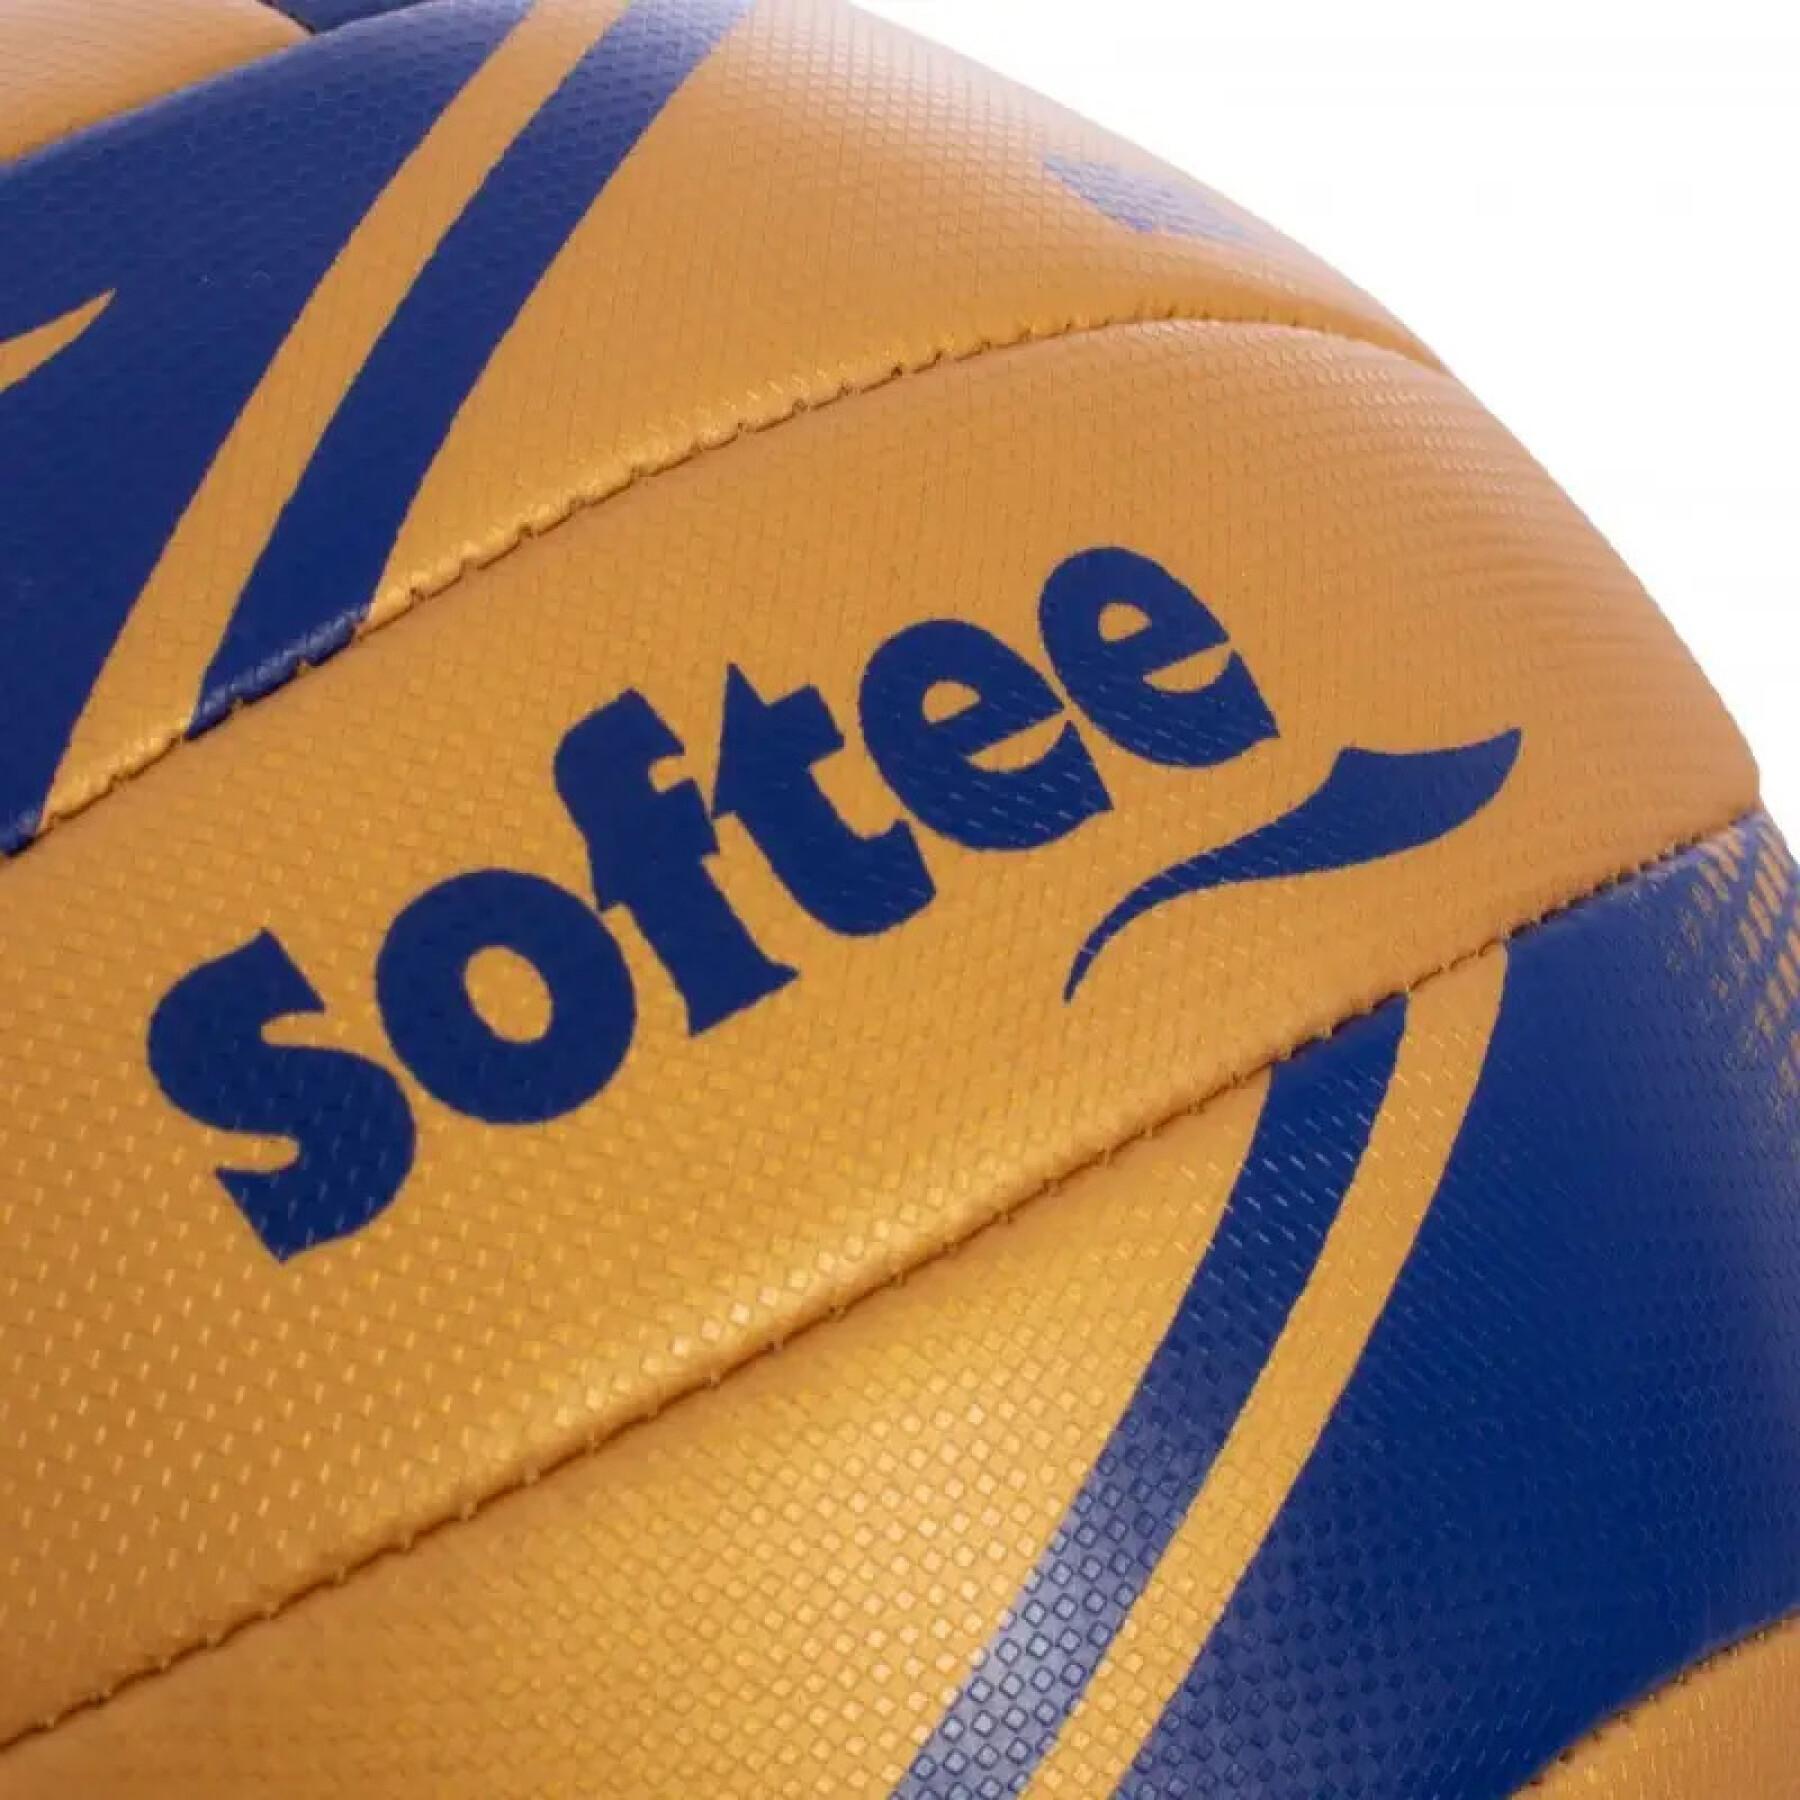 Ballon de volleyball Softee Orix Prizma 4